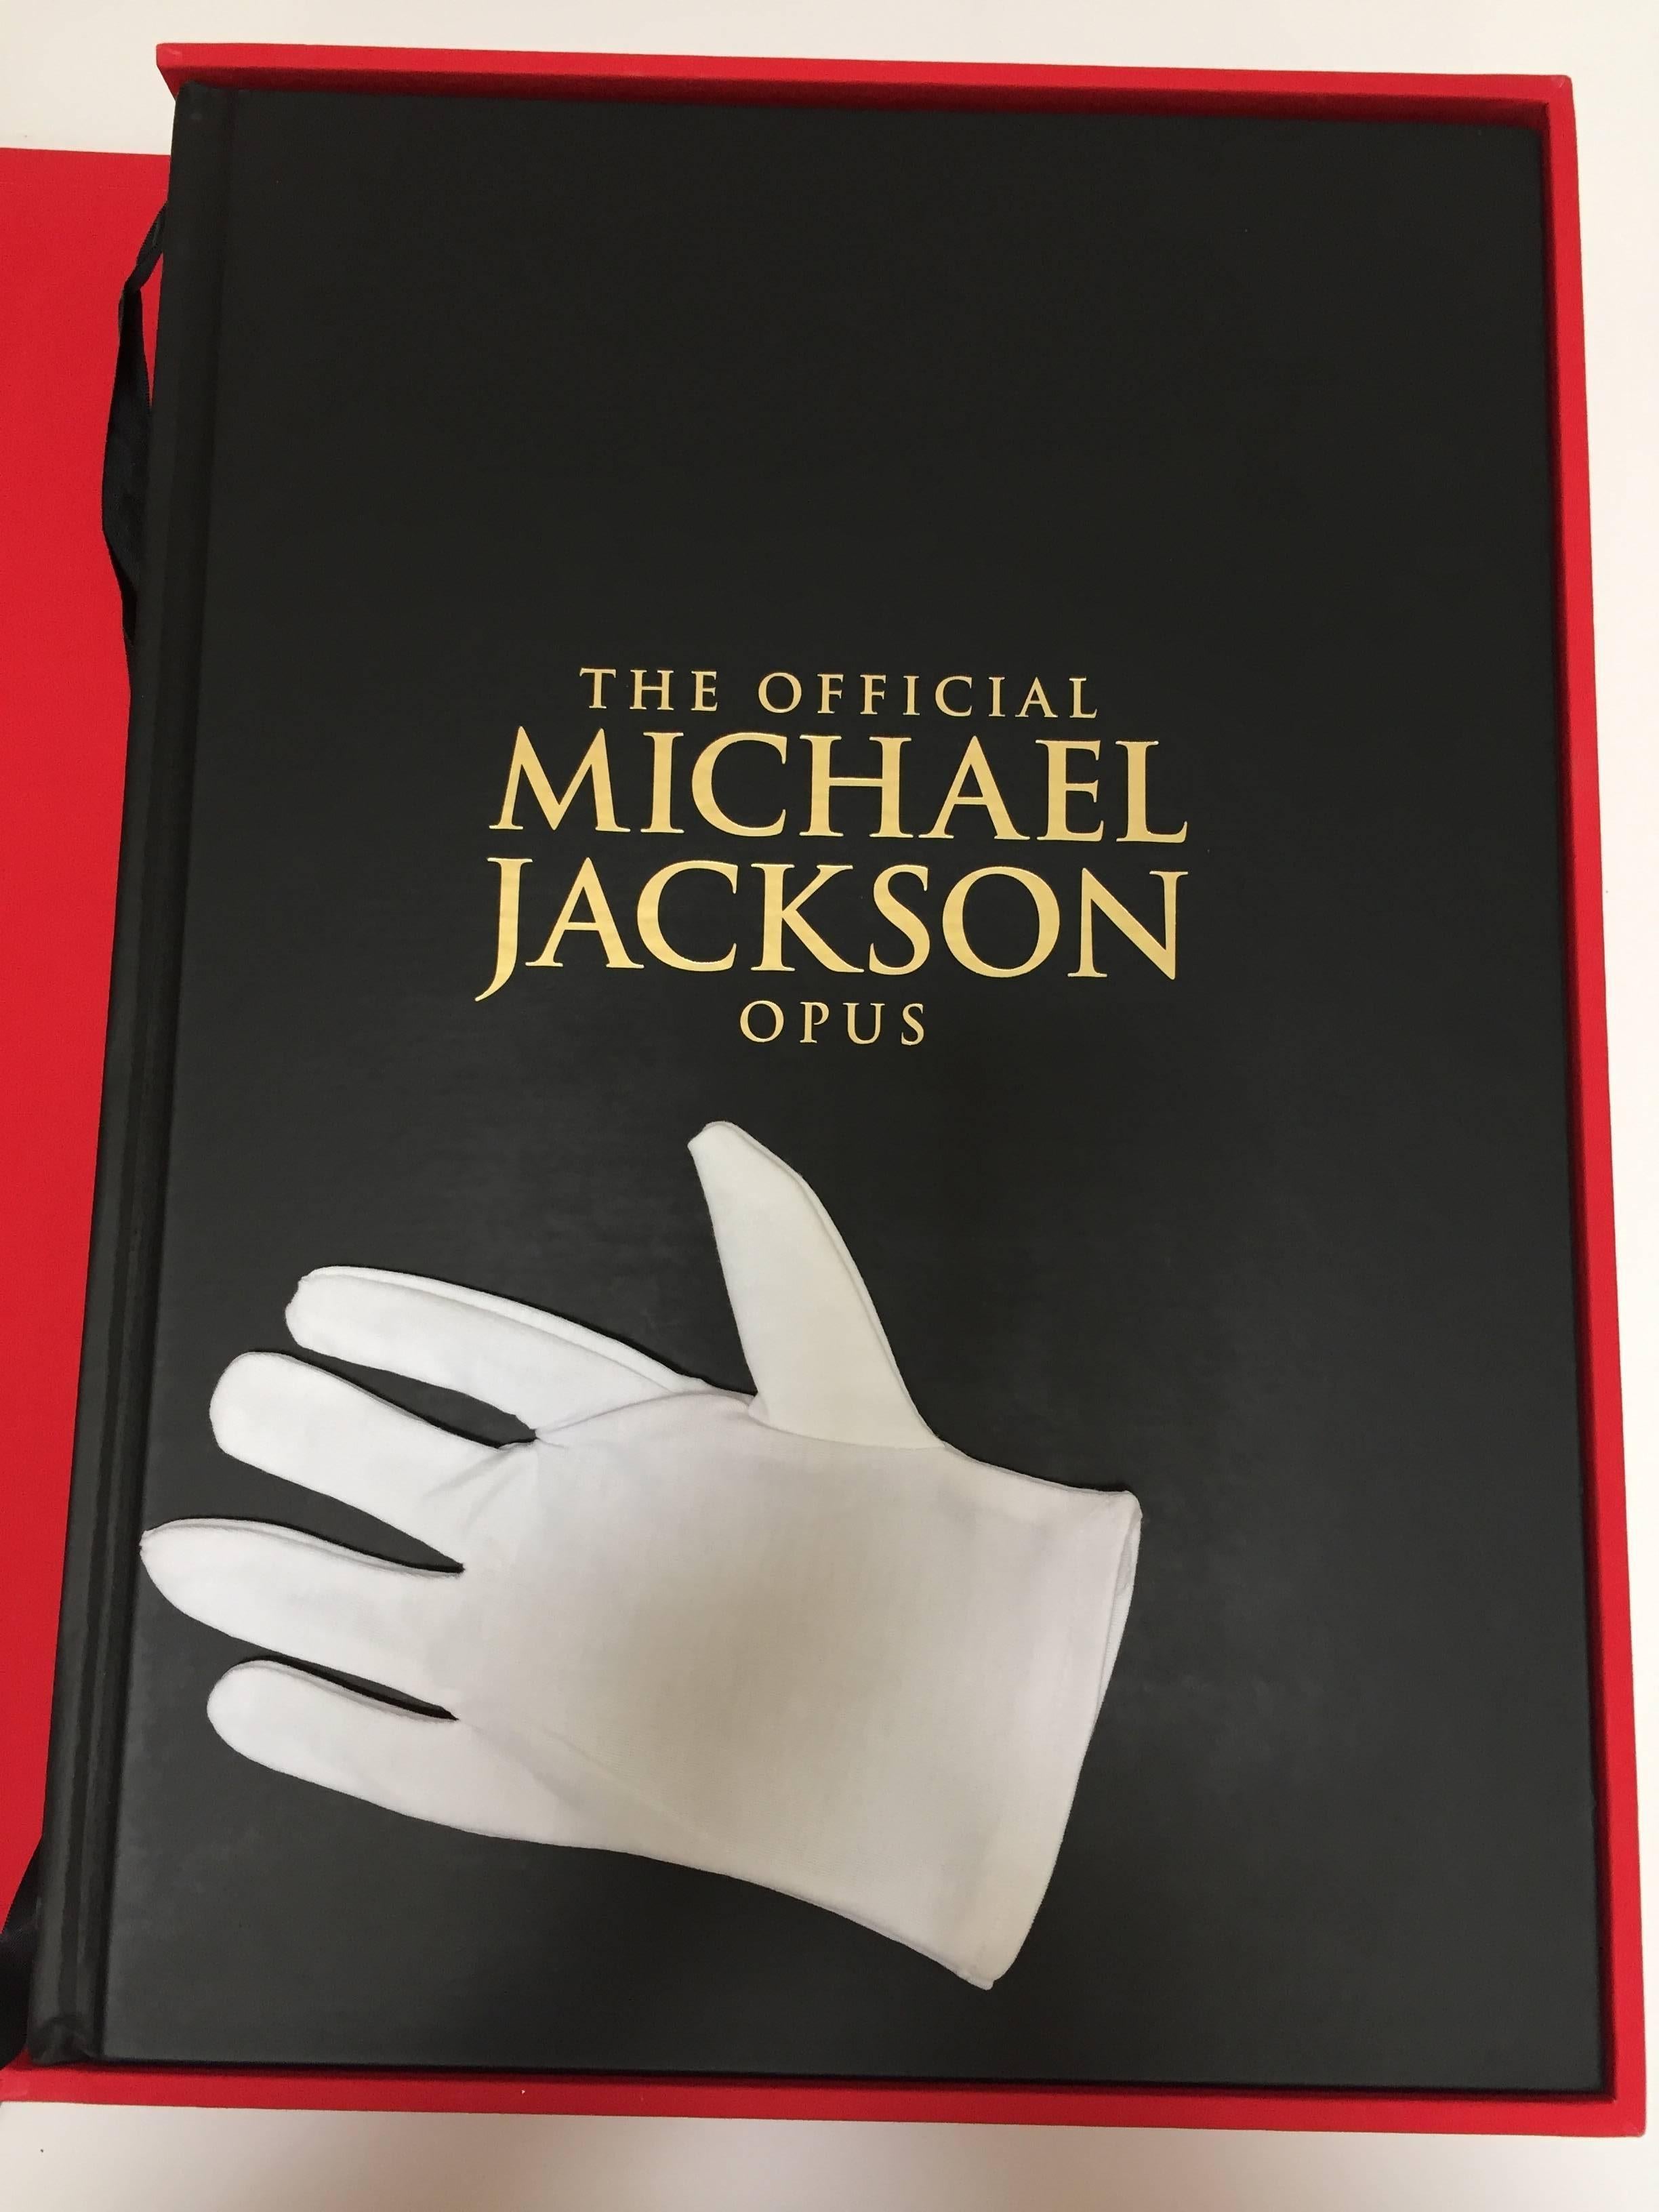 Michael Jackson Opus Grand livre de collection.
L'Opus officiel de Michael Jackson